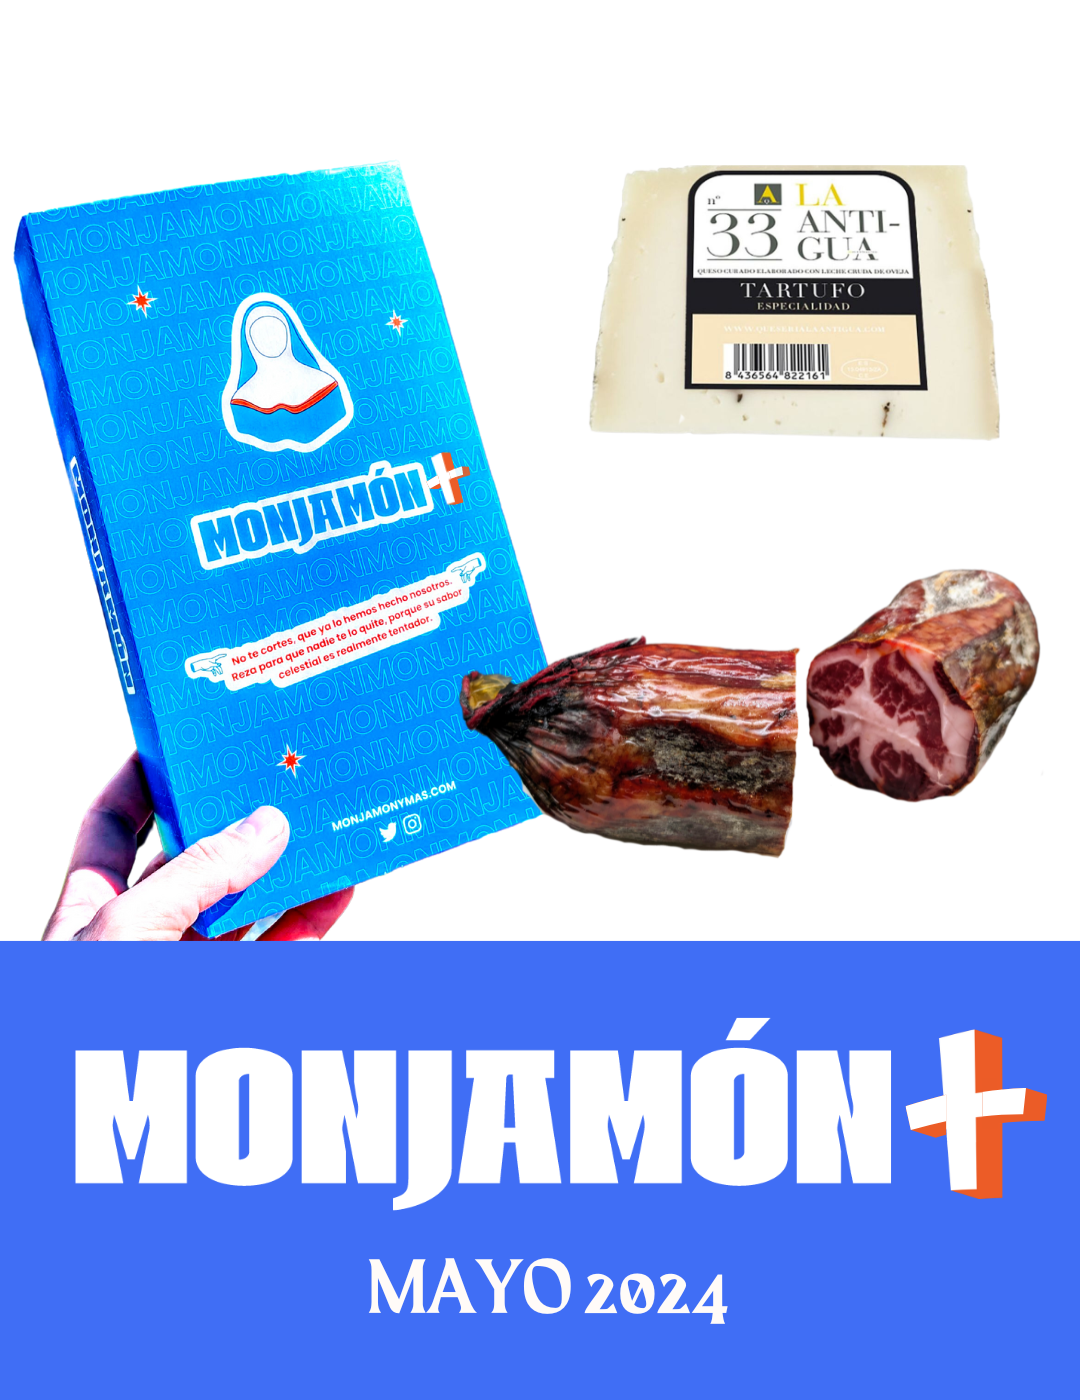 Monjamón Plus - Suscripción a Jamón Ibérico y más